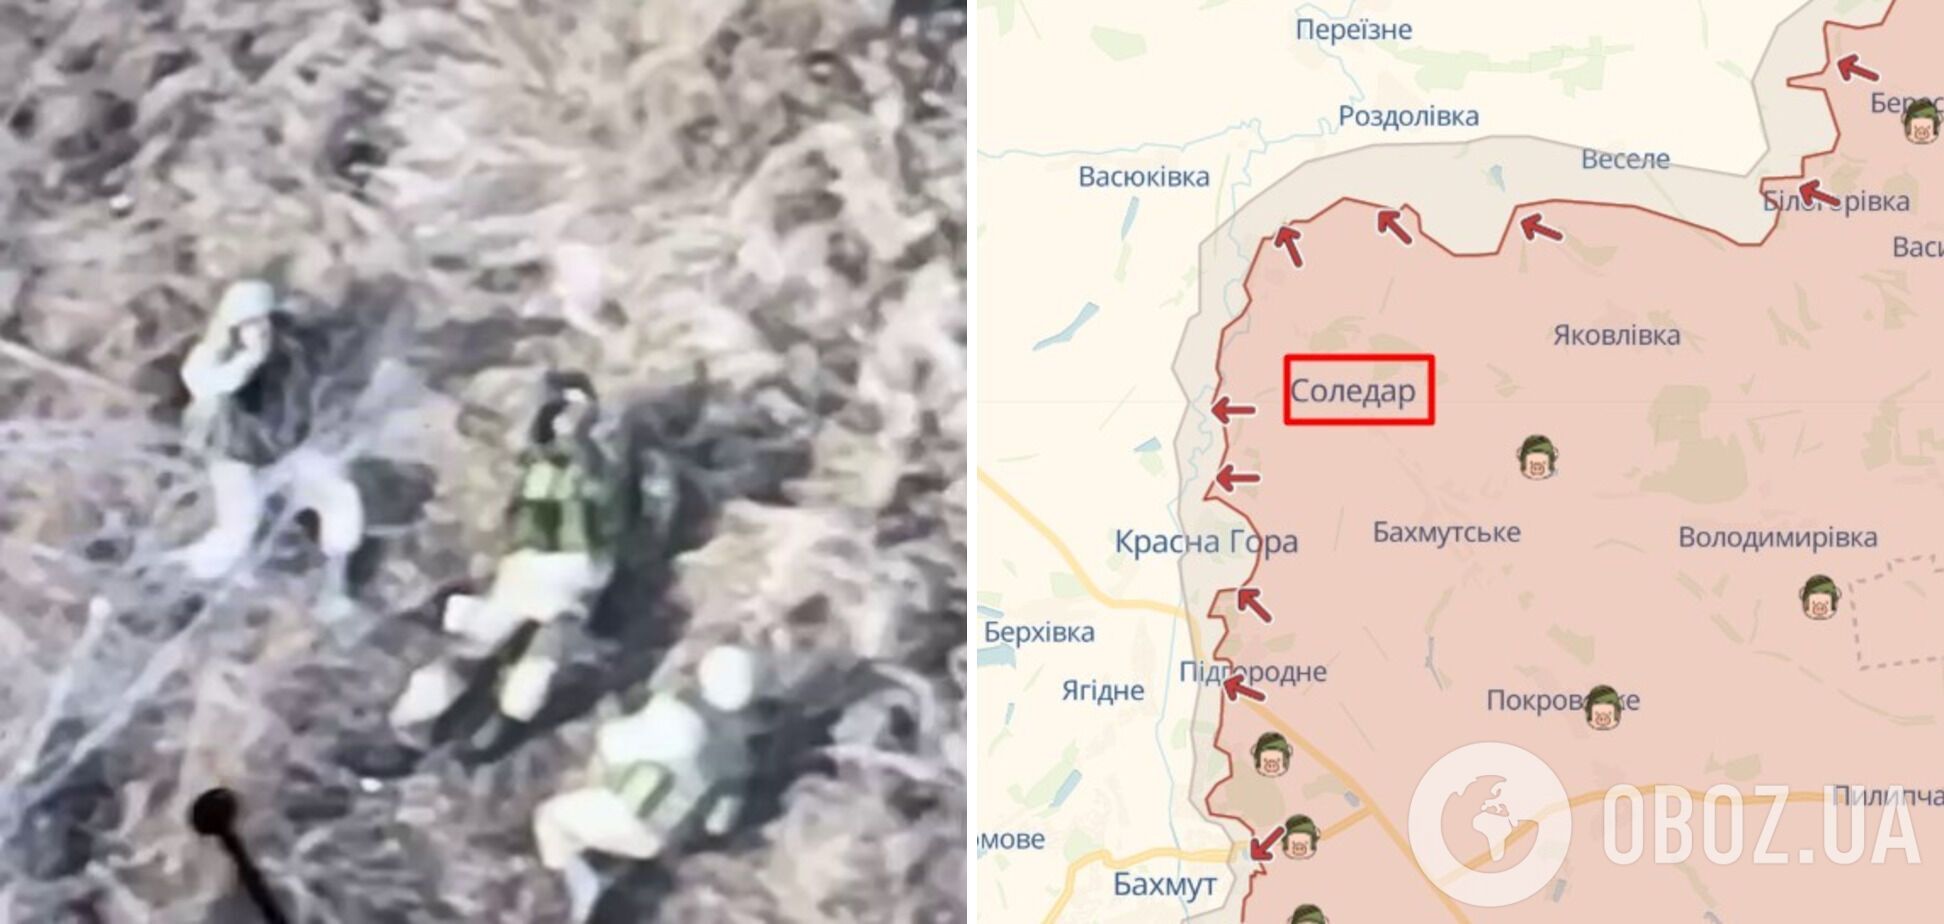 Аеророзвідник ''Мадяр'' показав ''полювання'' на окупантів біля Соледара. Відео